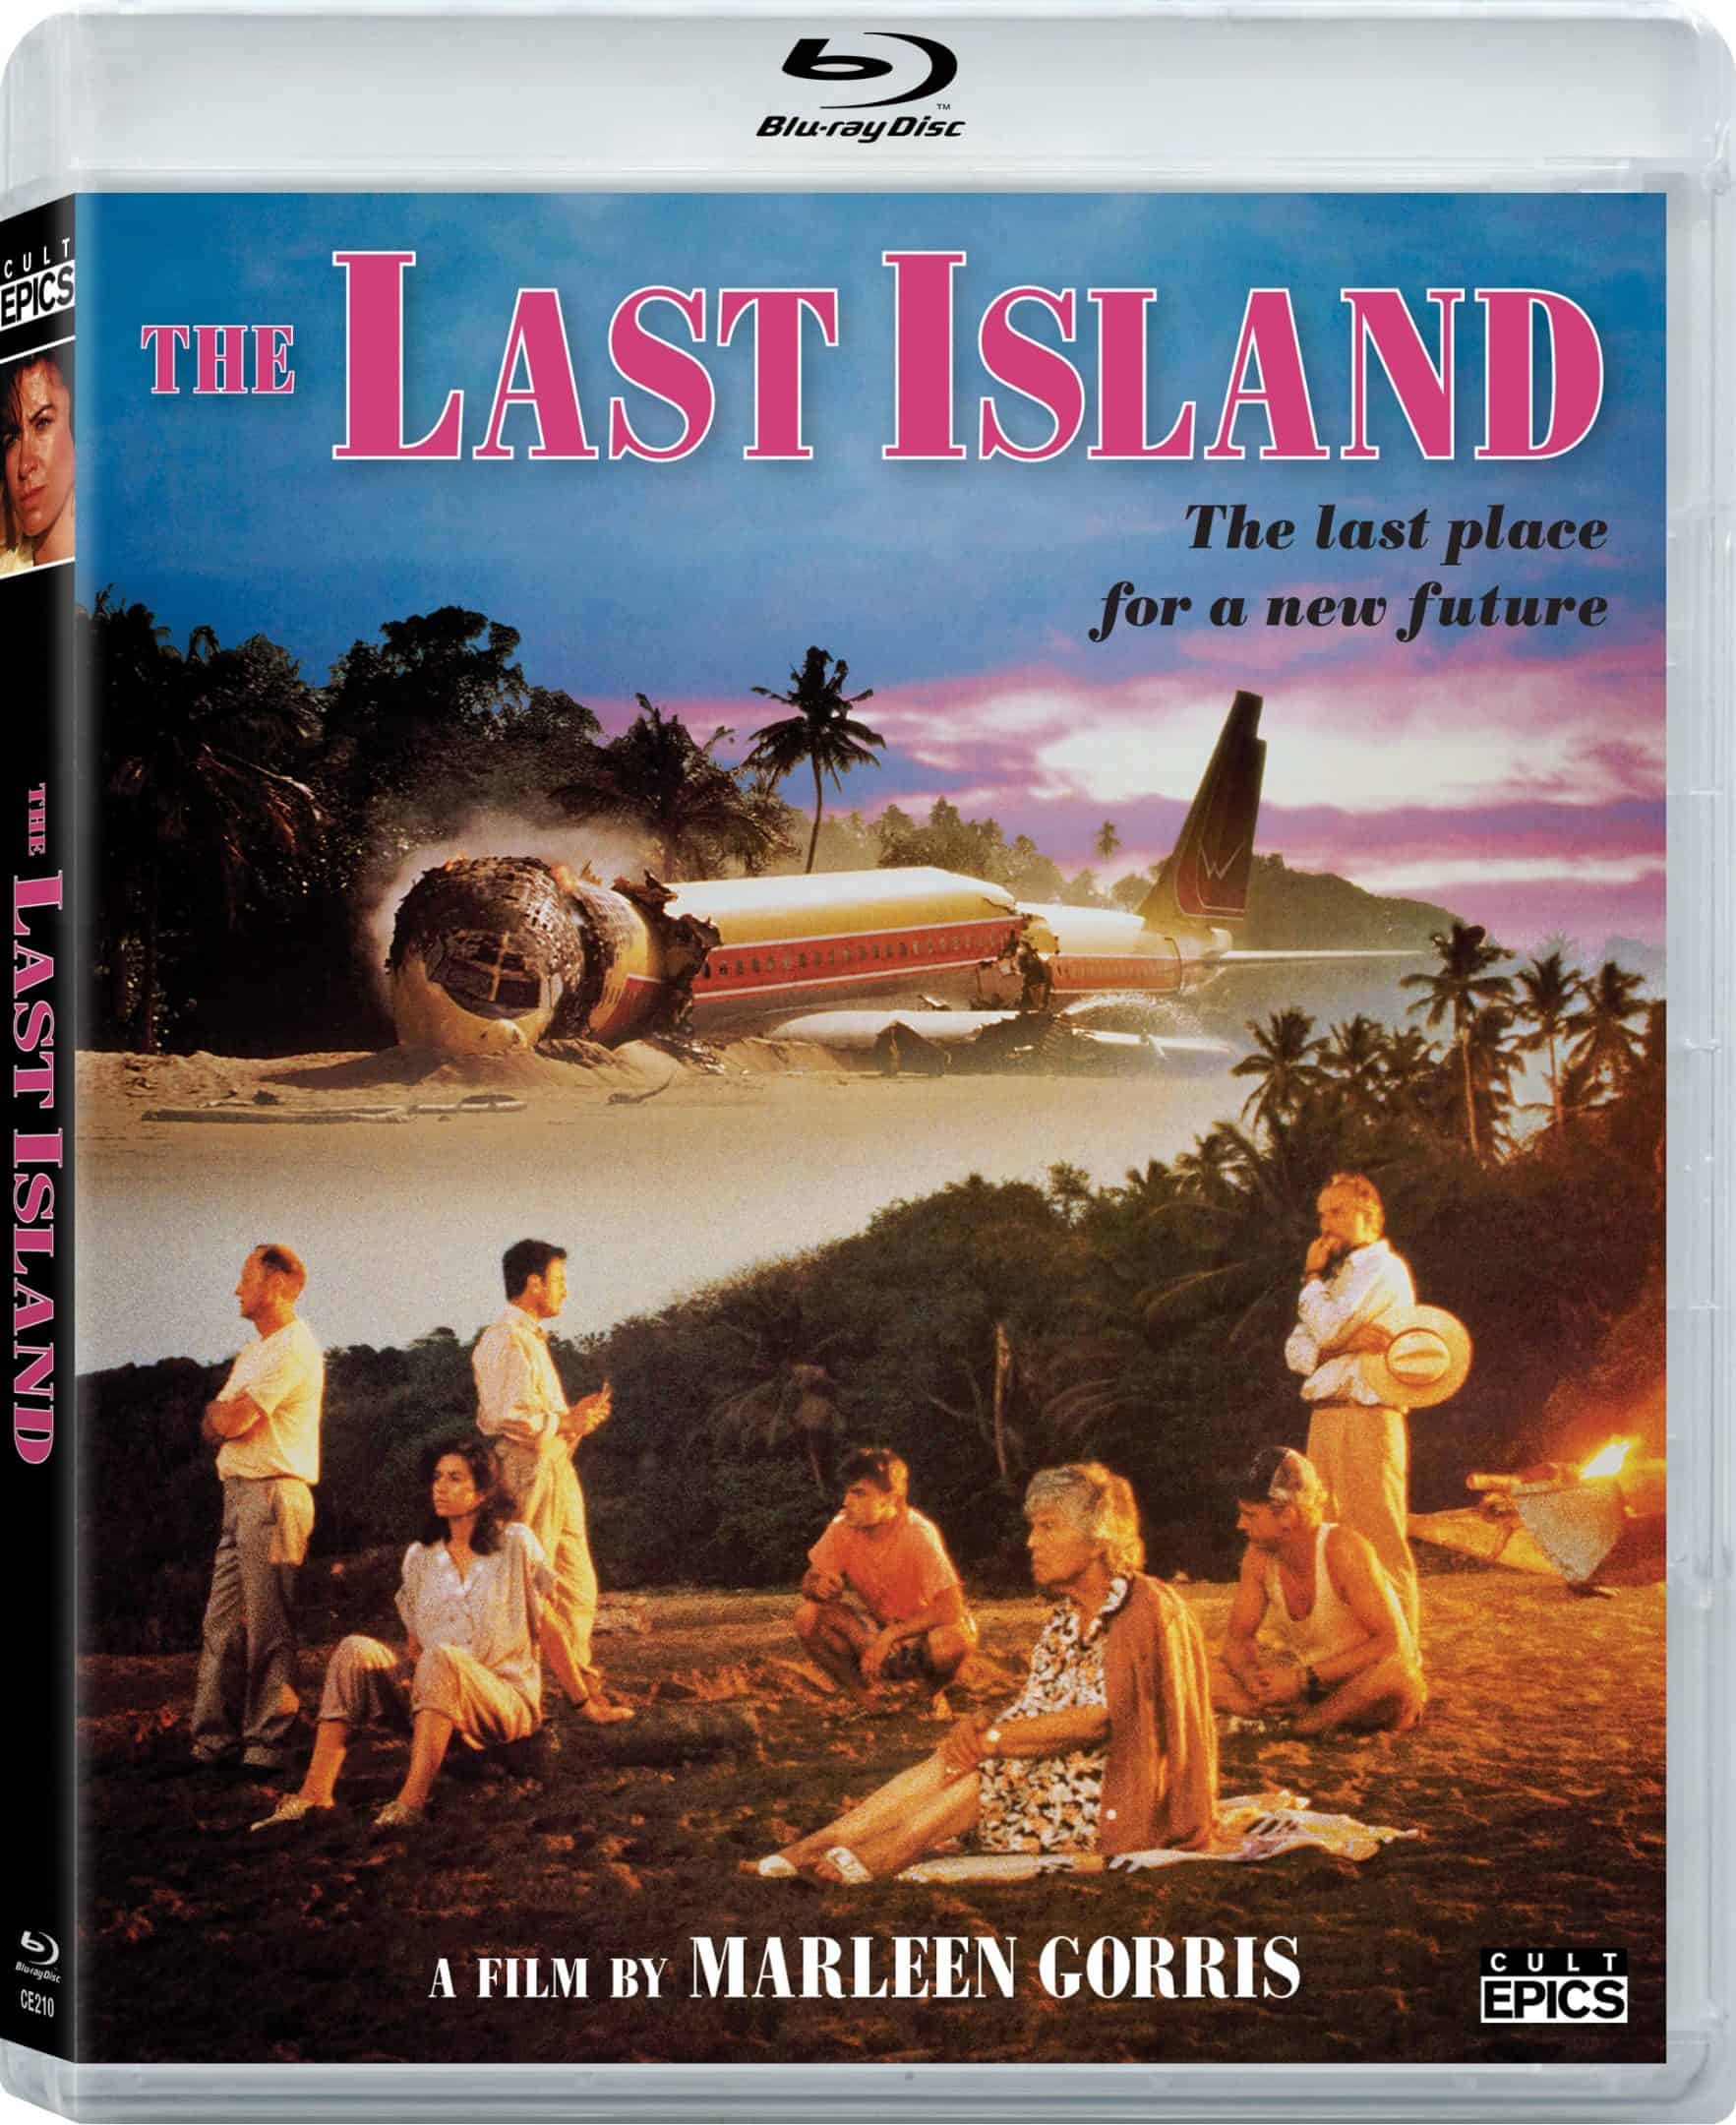 Cult Epics Unearths Dutch Sci-Fi Gem The Last Island on Blu-ray October 10 19